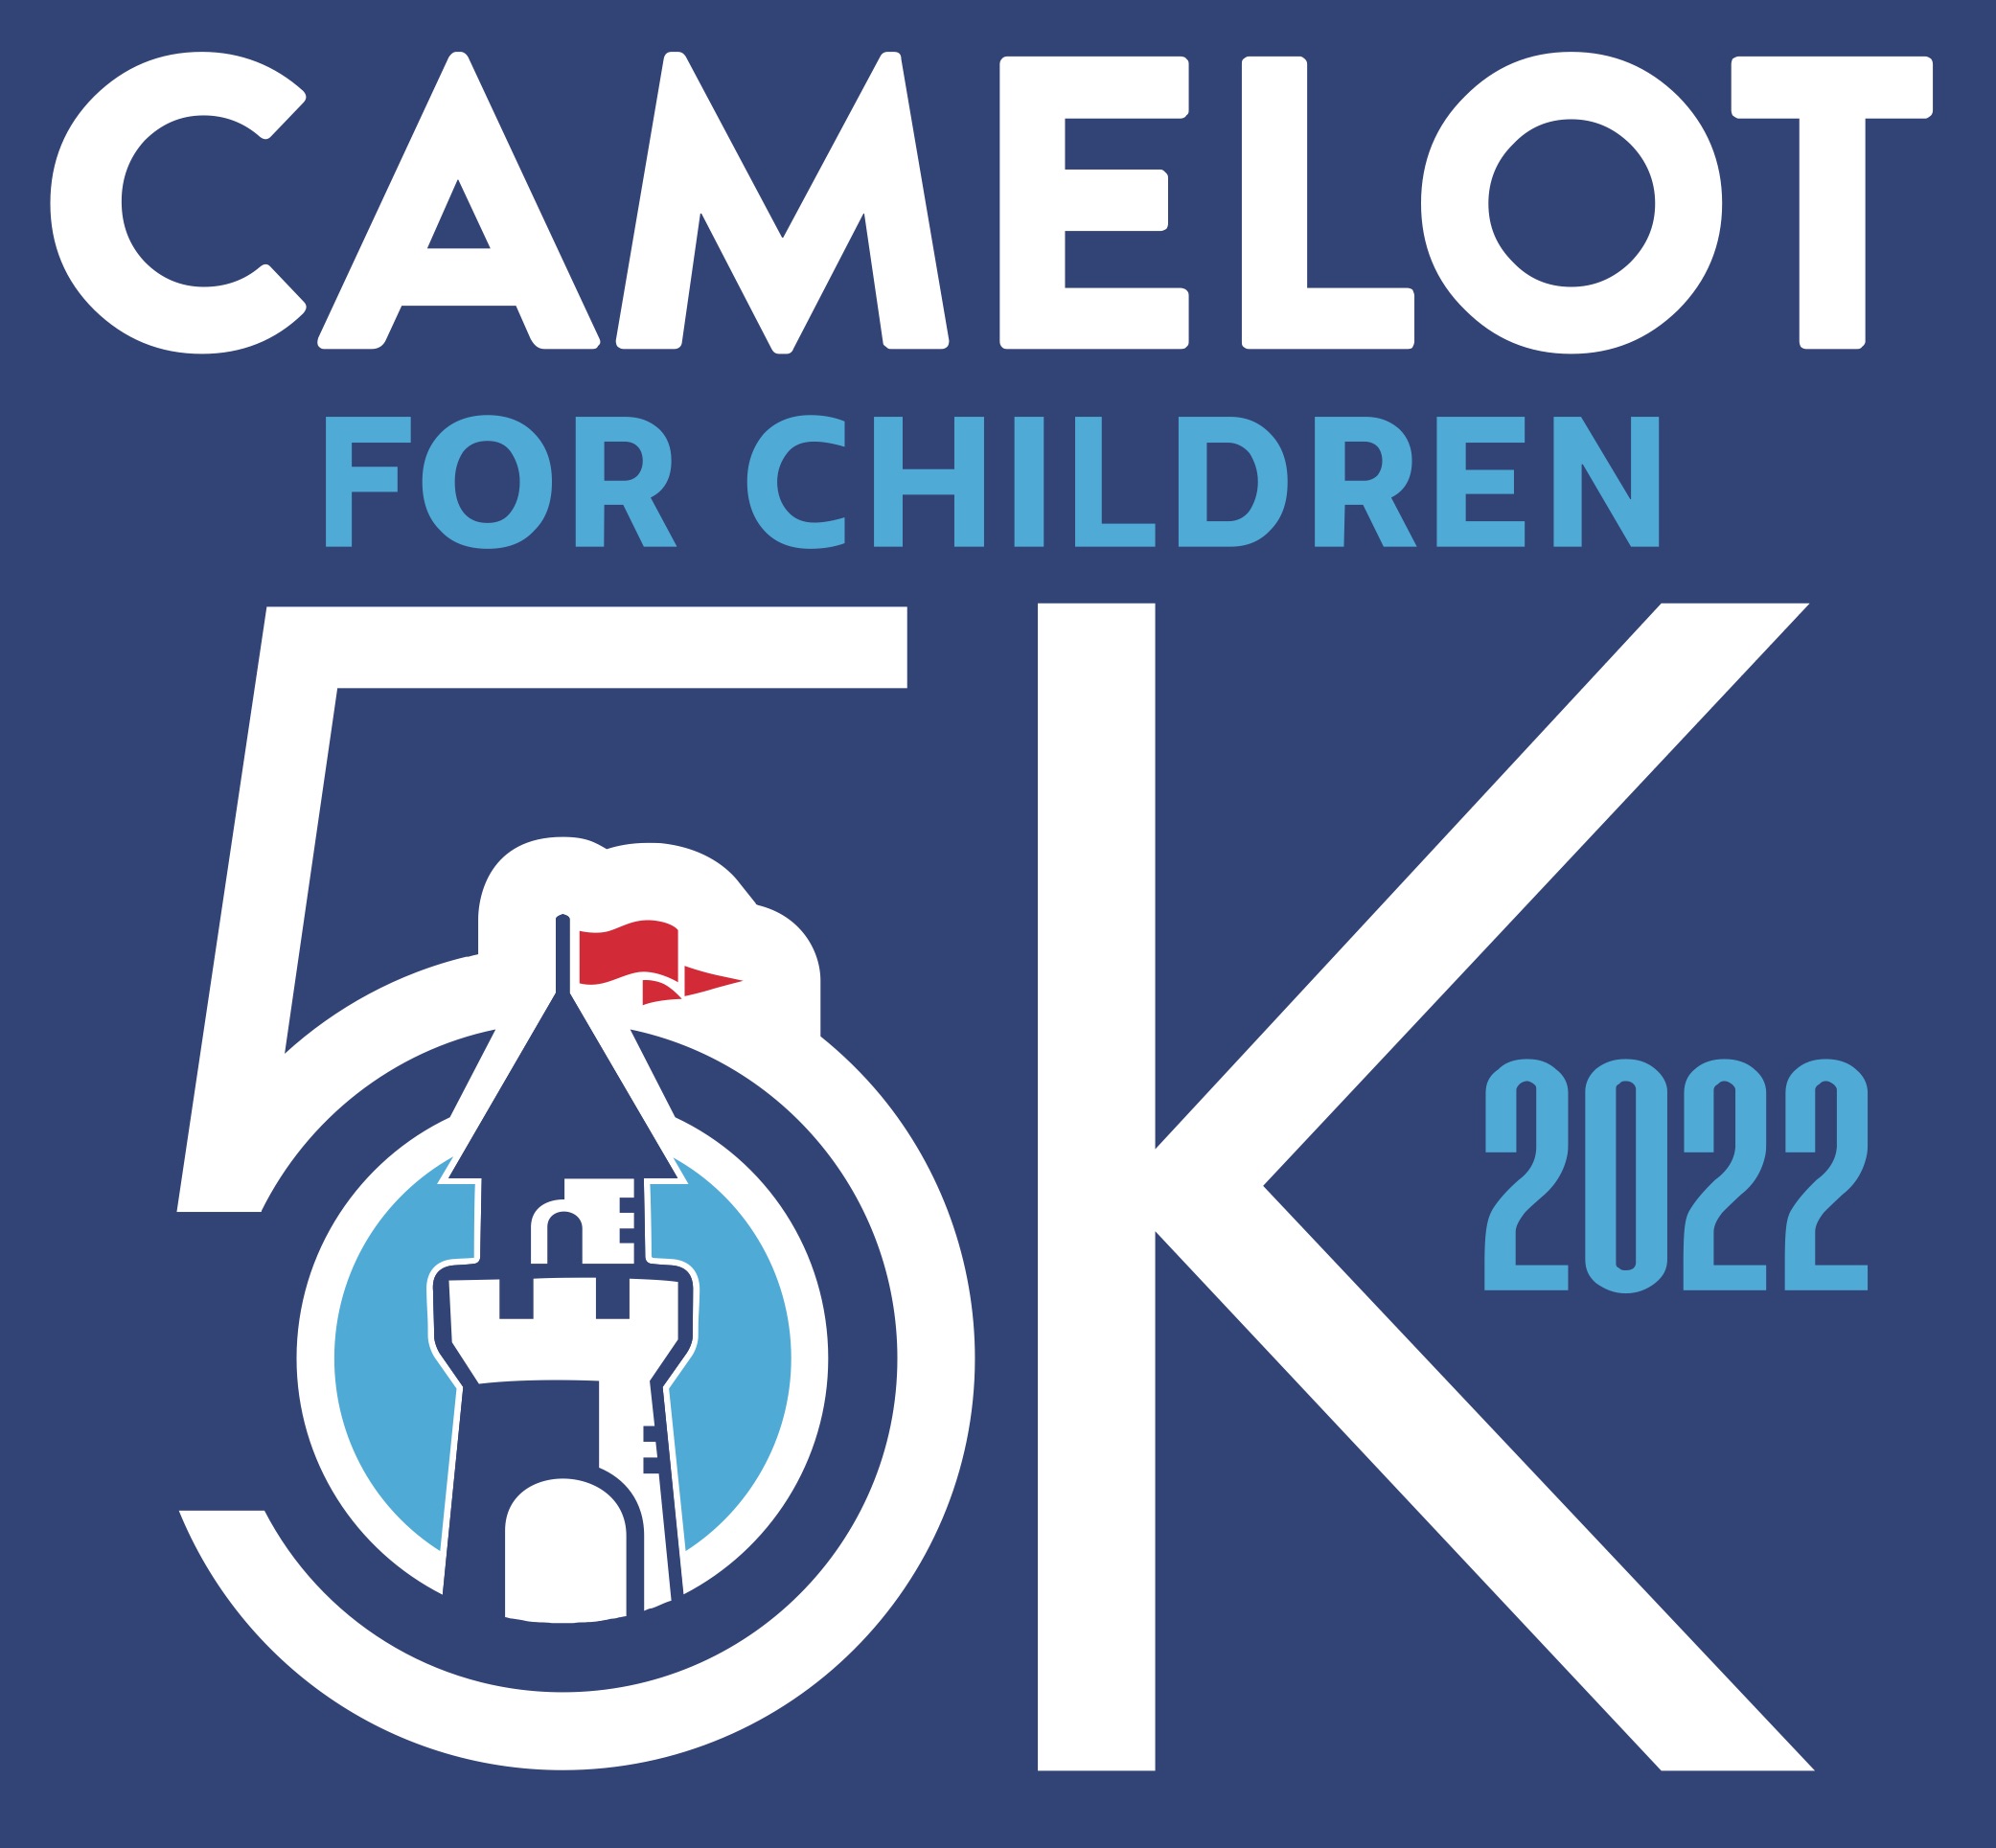 Camelot 5K Run/Walk